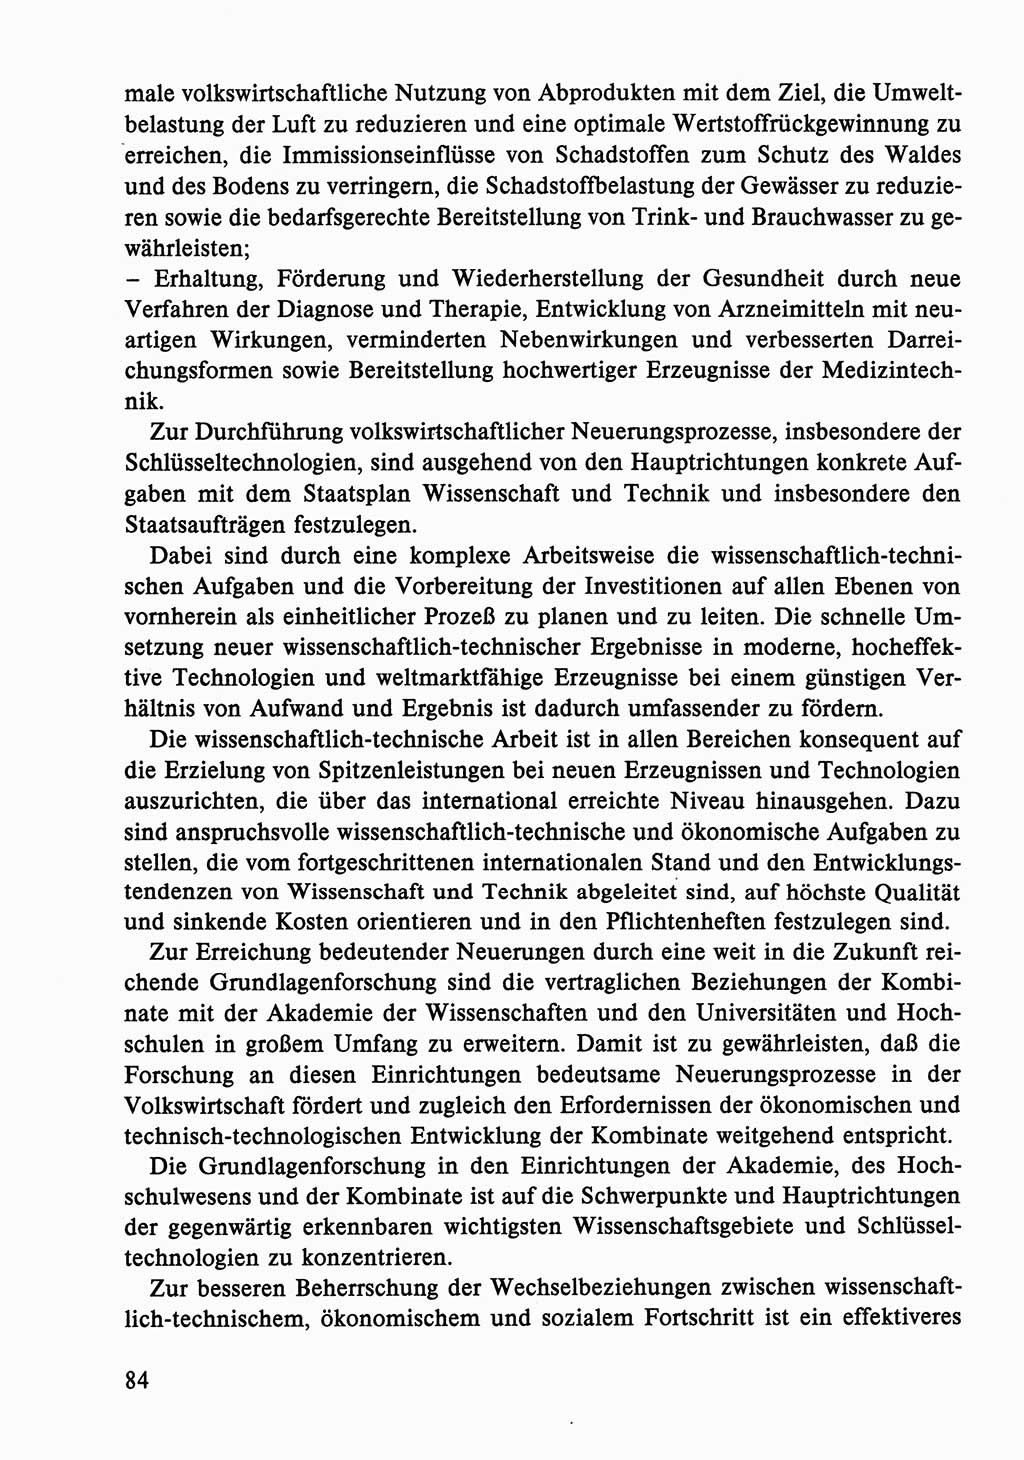 Dokumente der Sozialistischen Einheitspartei Deutschlands (SED) [Deutsche Demokratische Republik (DDR)] 1986-1987, Seite 84 (Dok. SED DDR 1986-1987, S. 84)